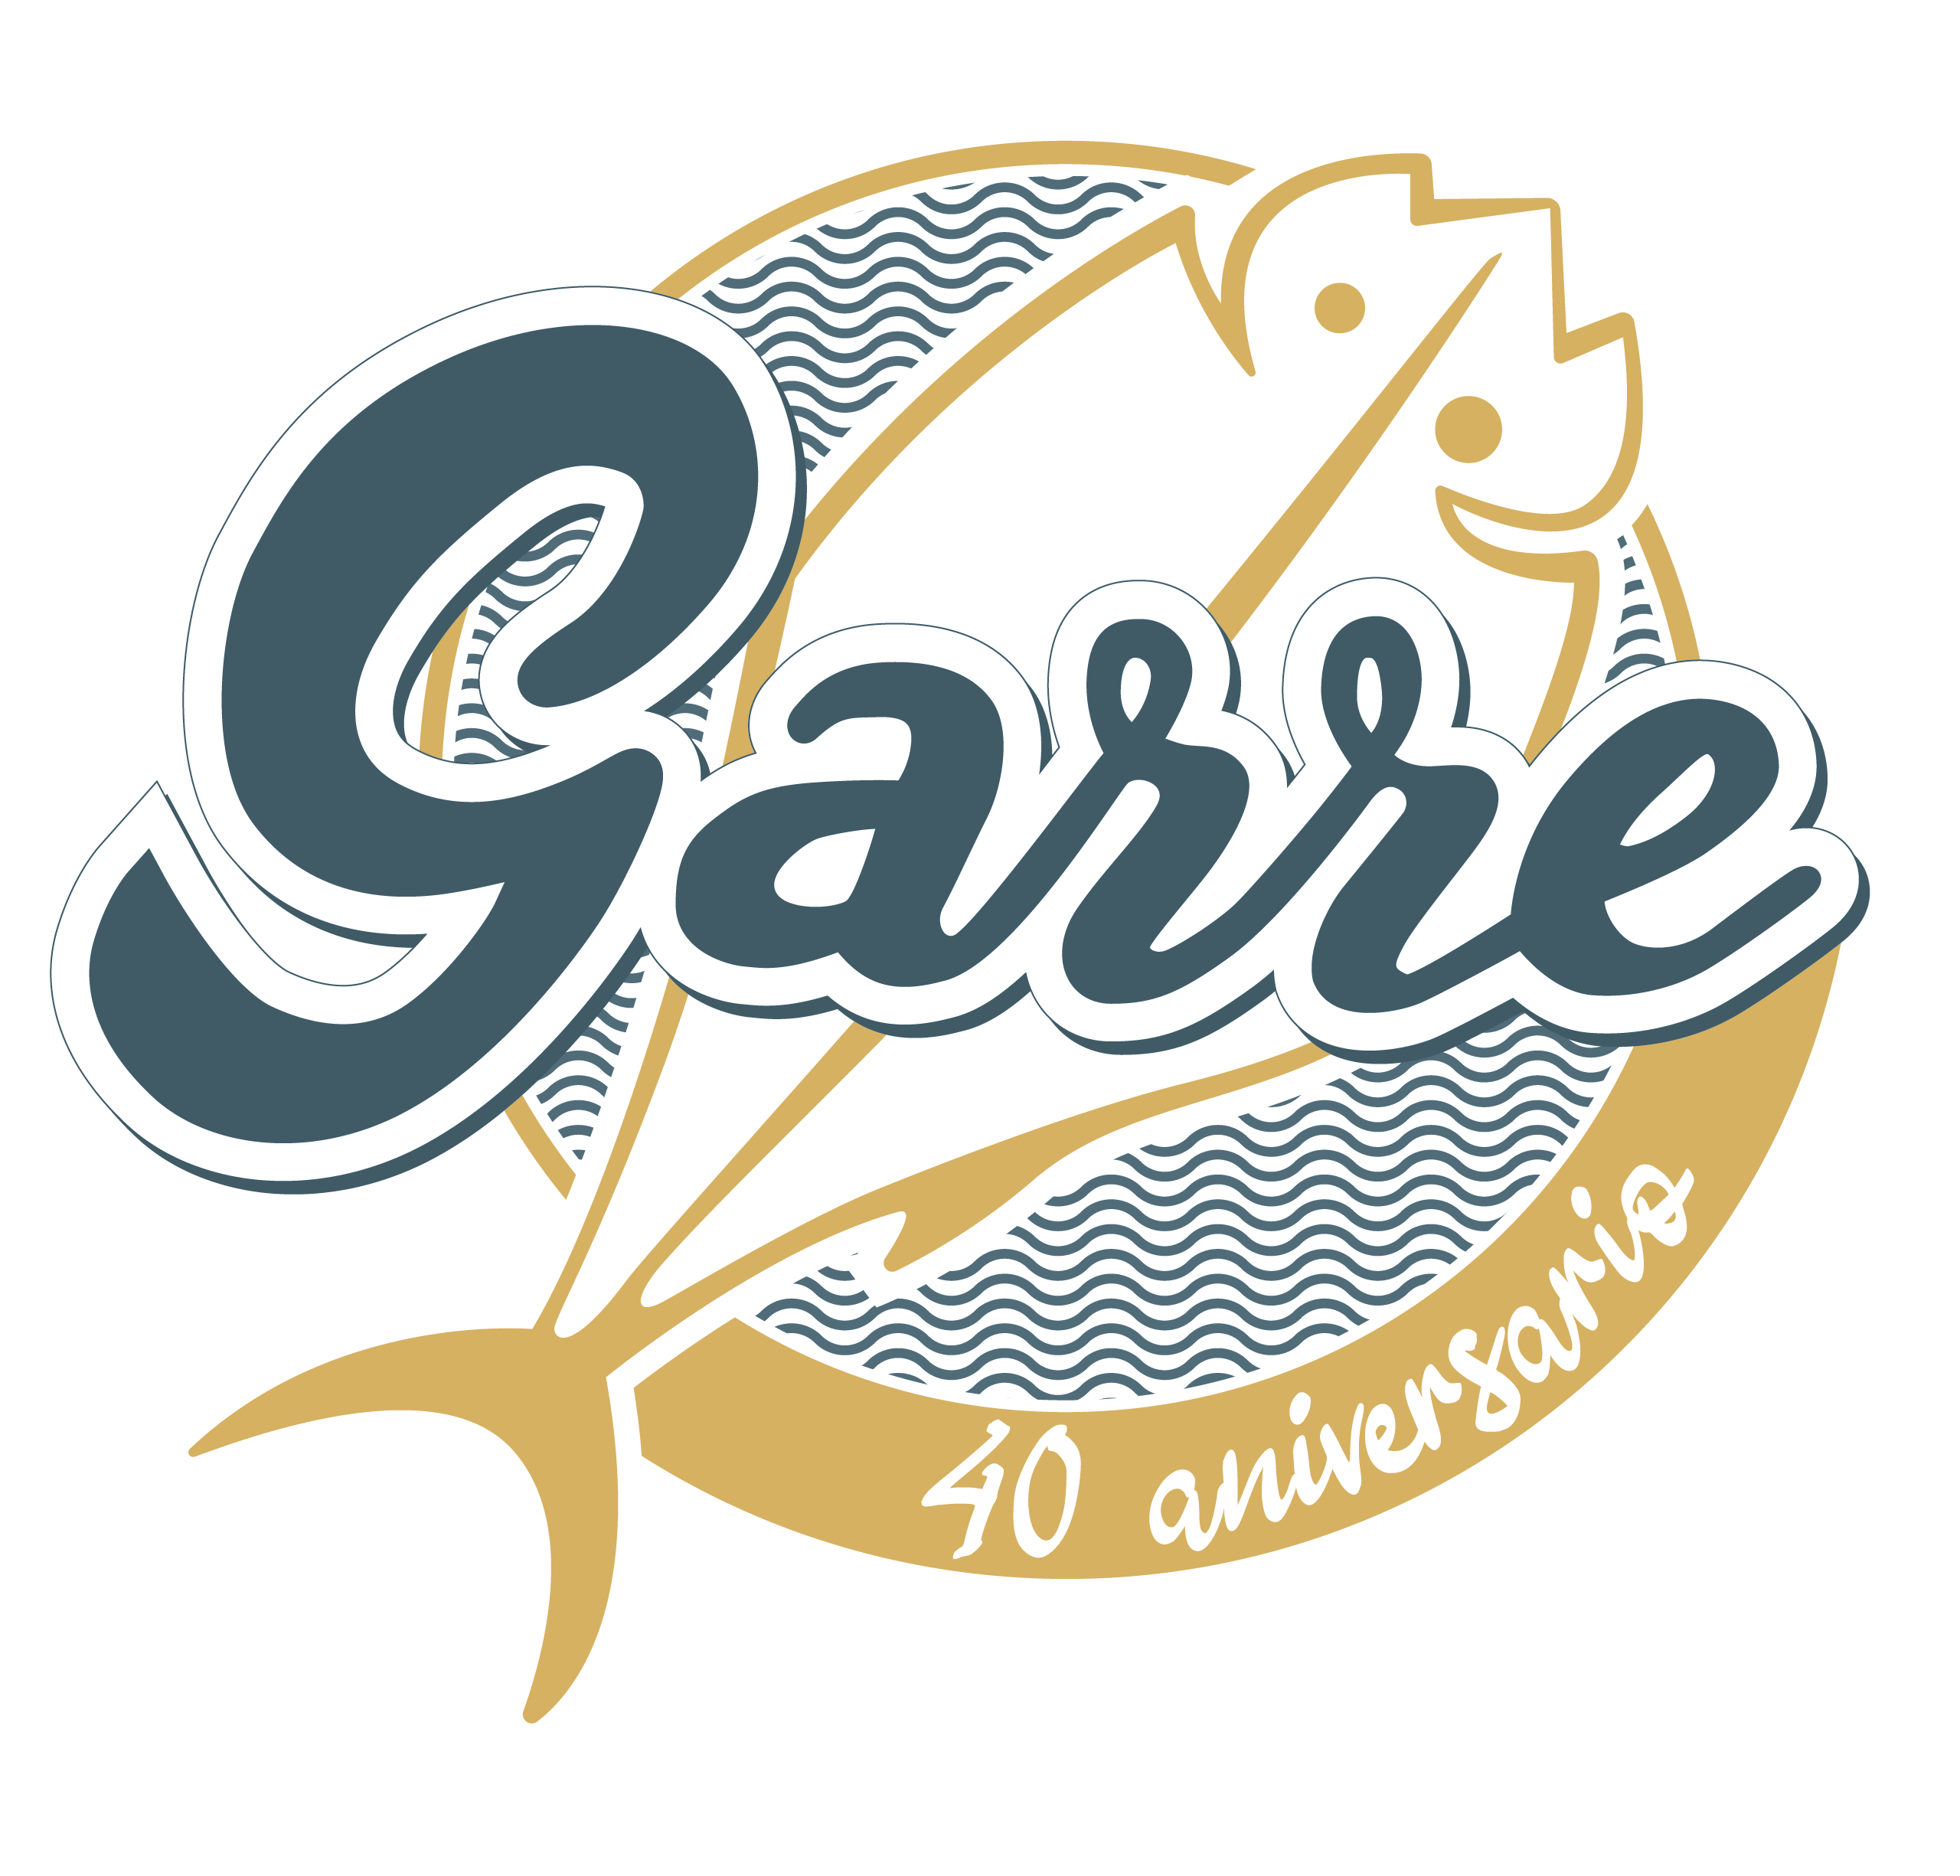 Salsa Garum | Bote 100g - Salazones Garre. Salazones artesanos directamente en su casa